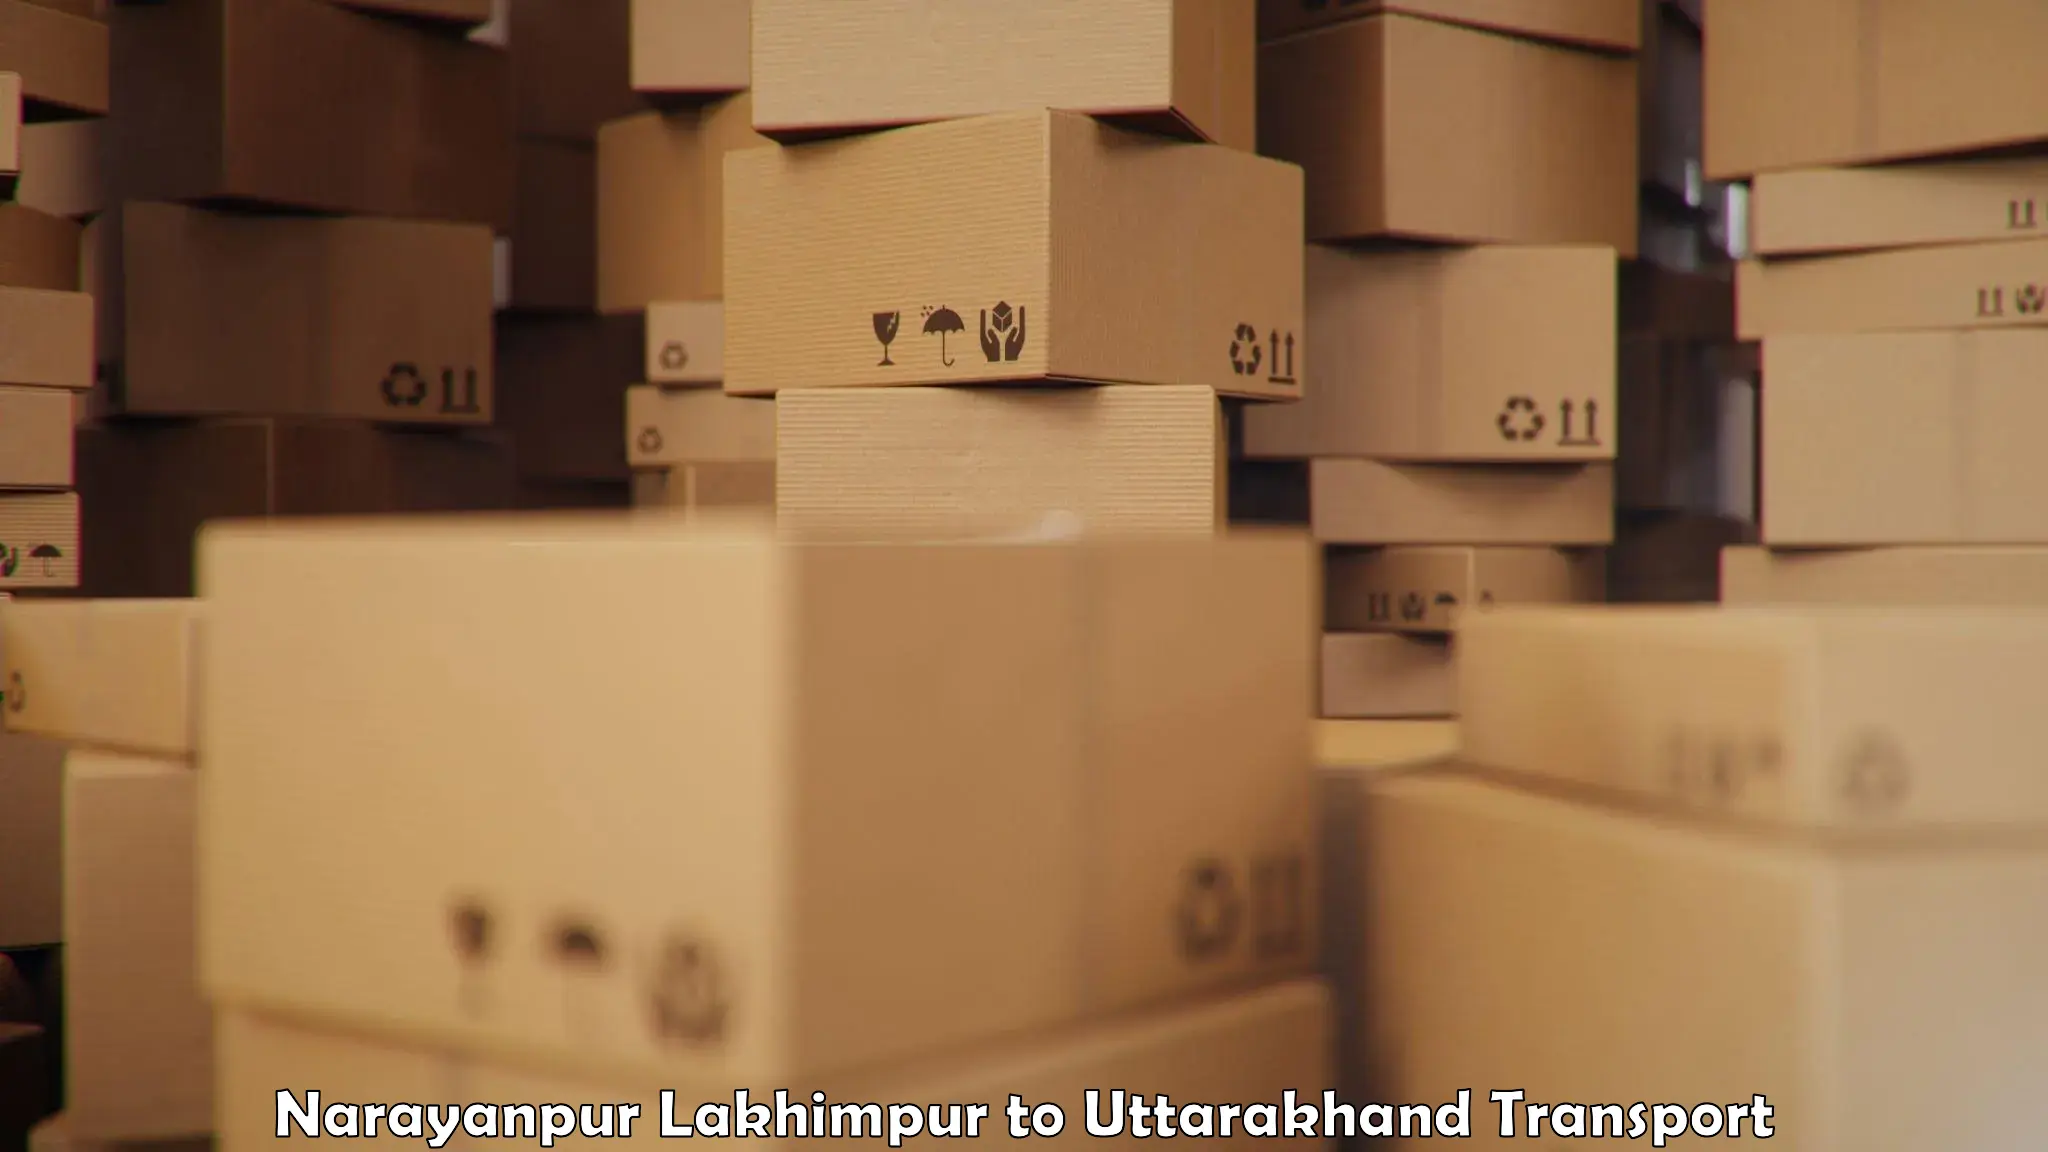 Cargo transportation services Narayanpur Lakhimpur to Dwarahat